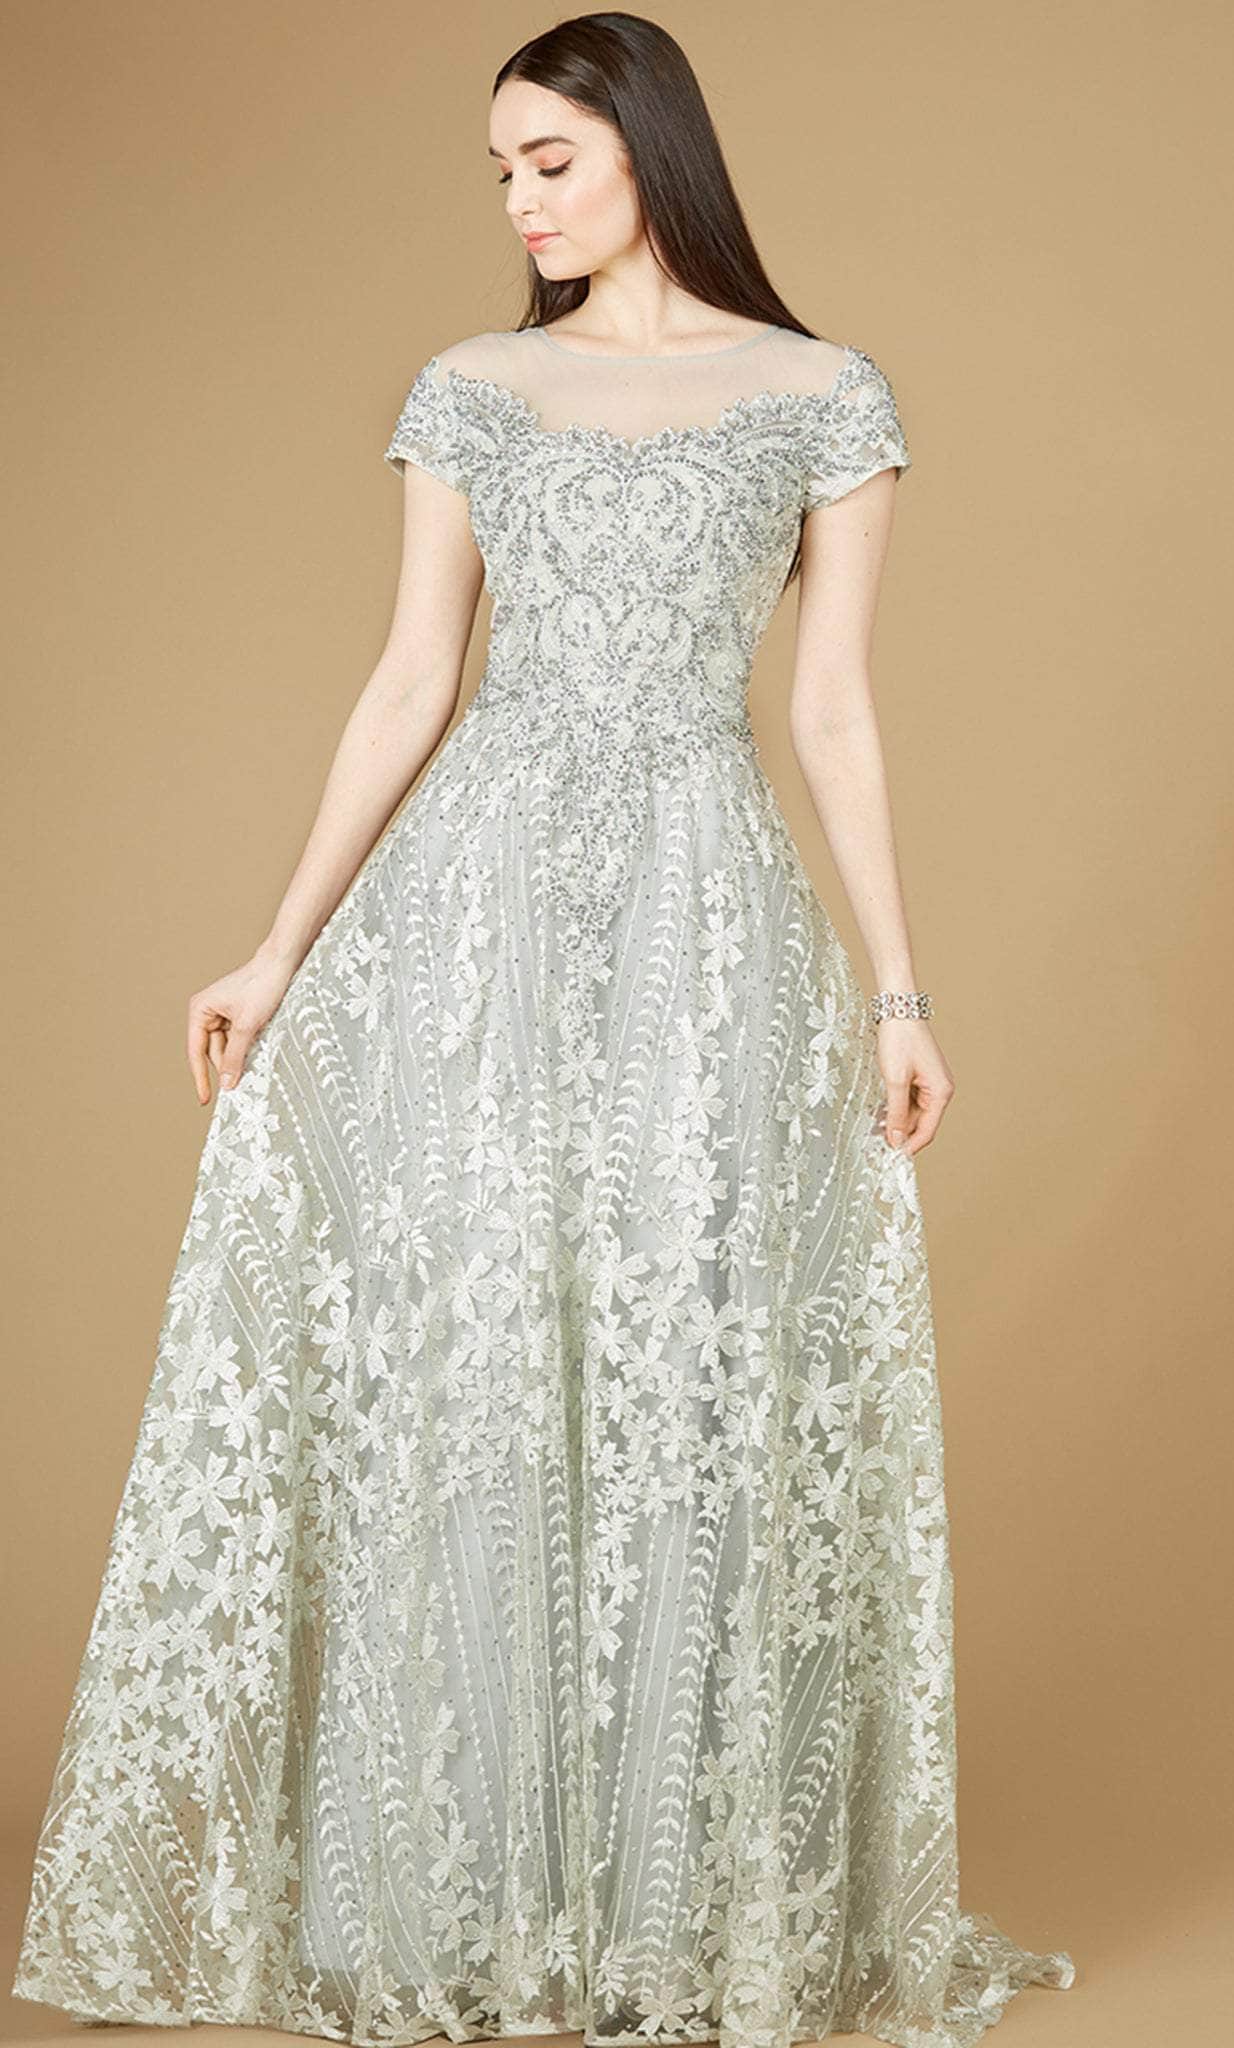 Image of Lara Dresses 29235 - Floral Embellished Formal Gown